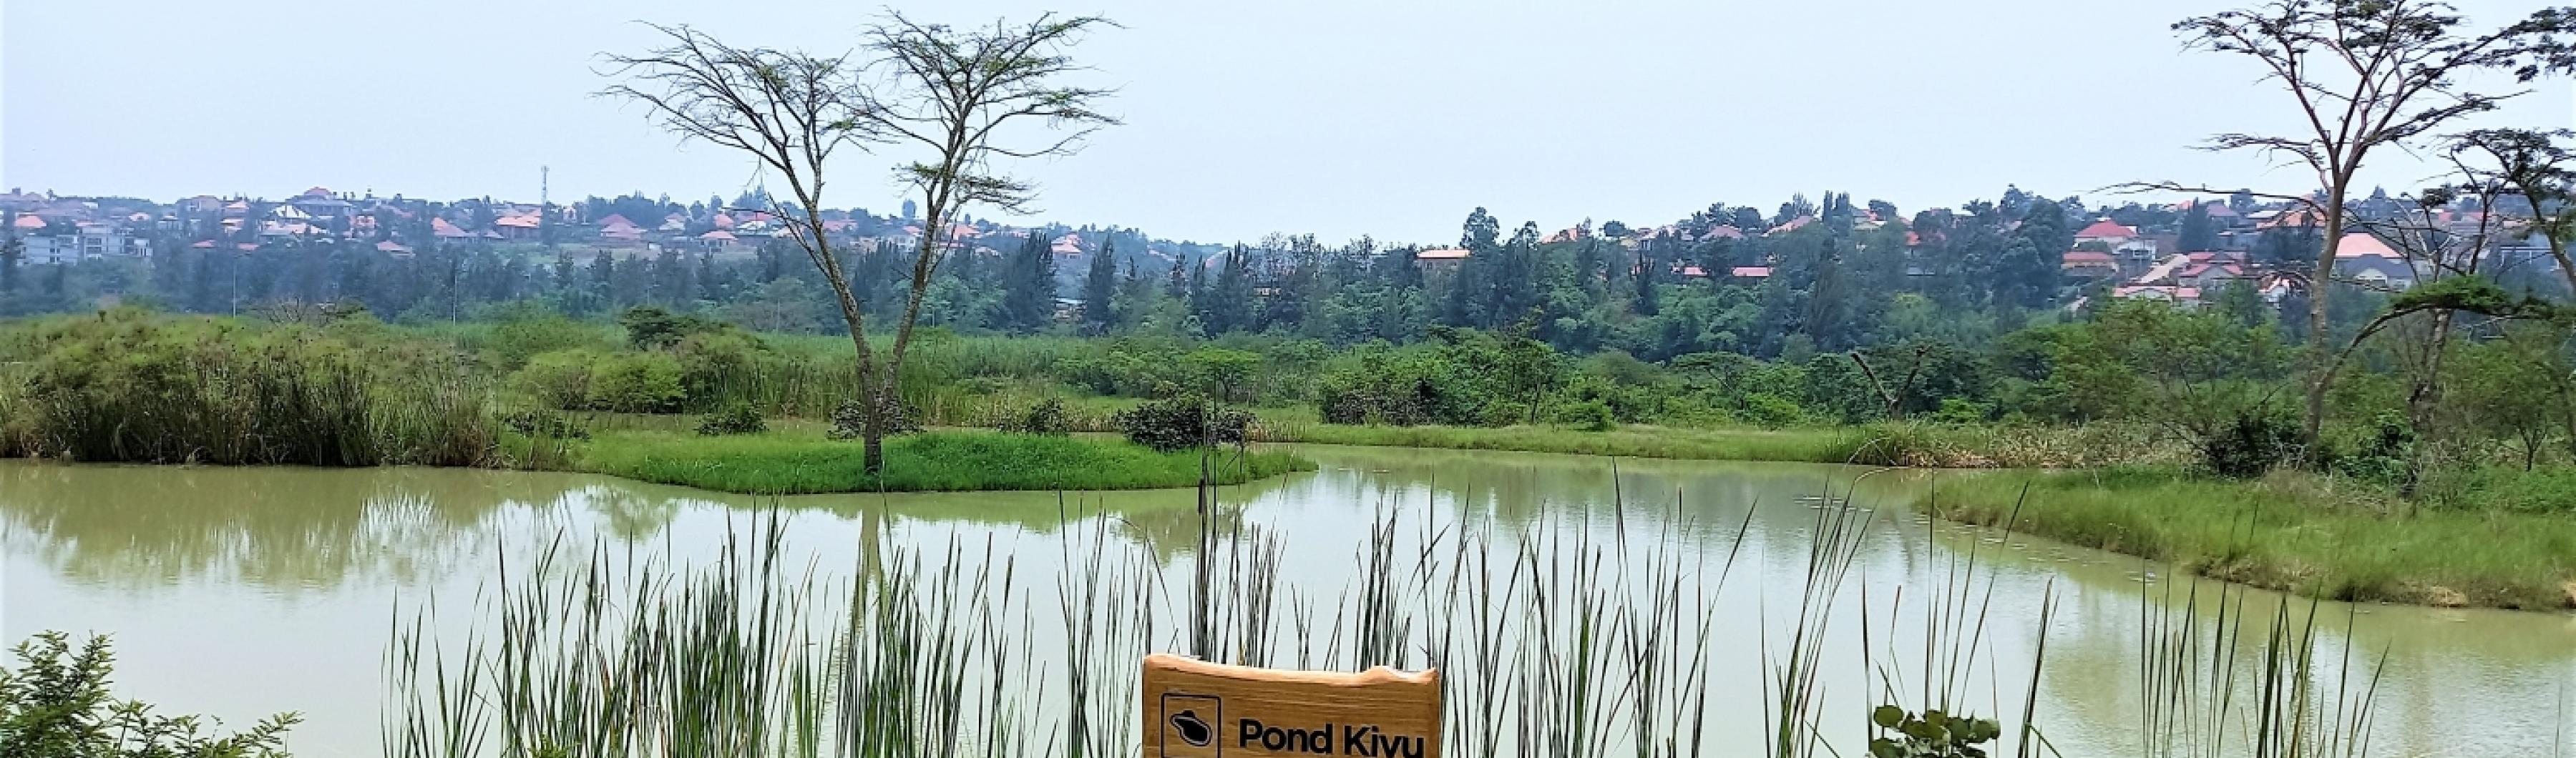 Kigali Nyandungu wetland rwanda